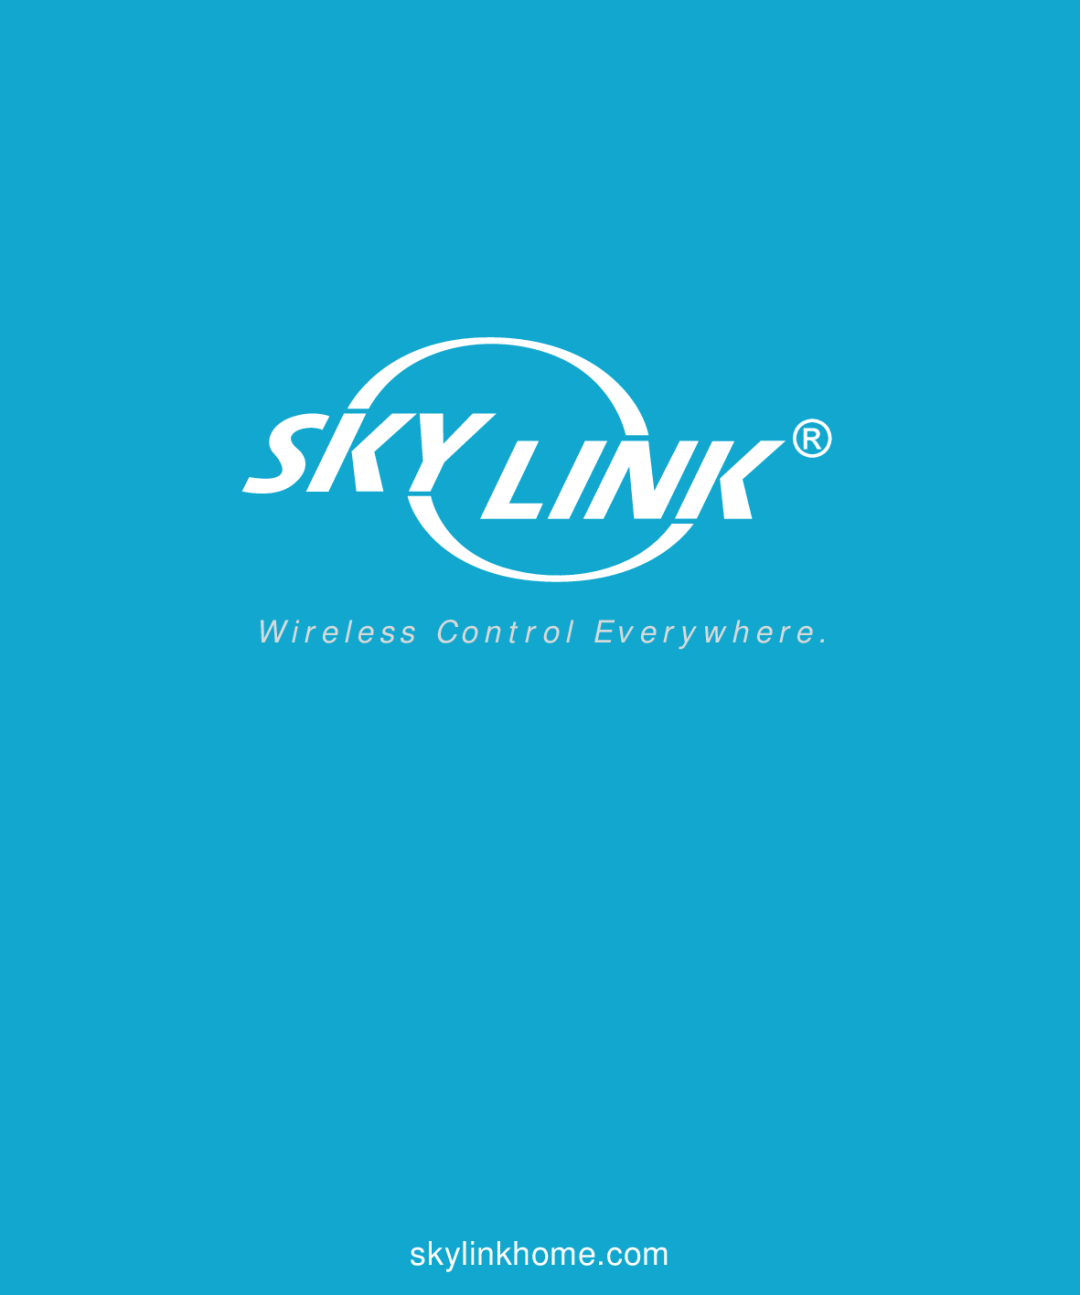 SkyLink wc-400 user manual W i r e l e s s C o n t r o l E v e r y wh e r e 